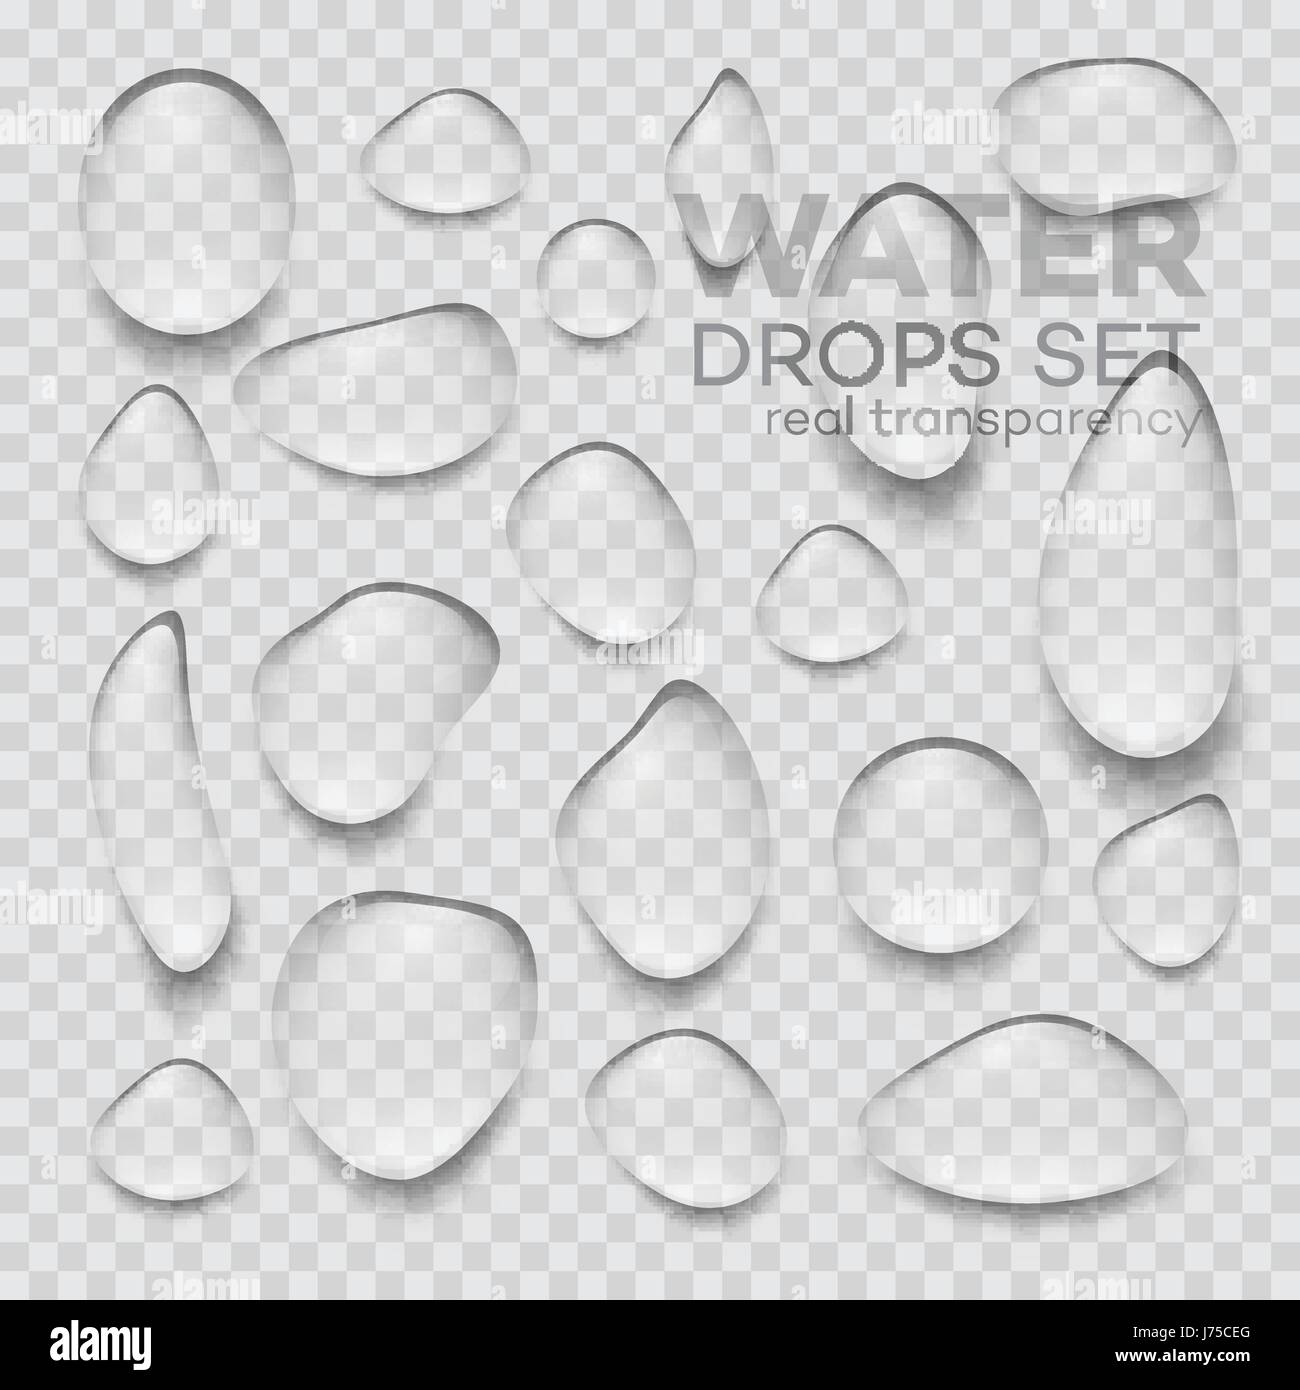 Realistische transparente Wassertropfen. Vektor-illustration Stock Vektor